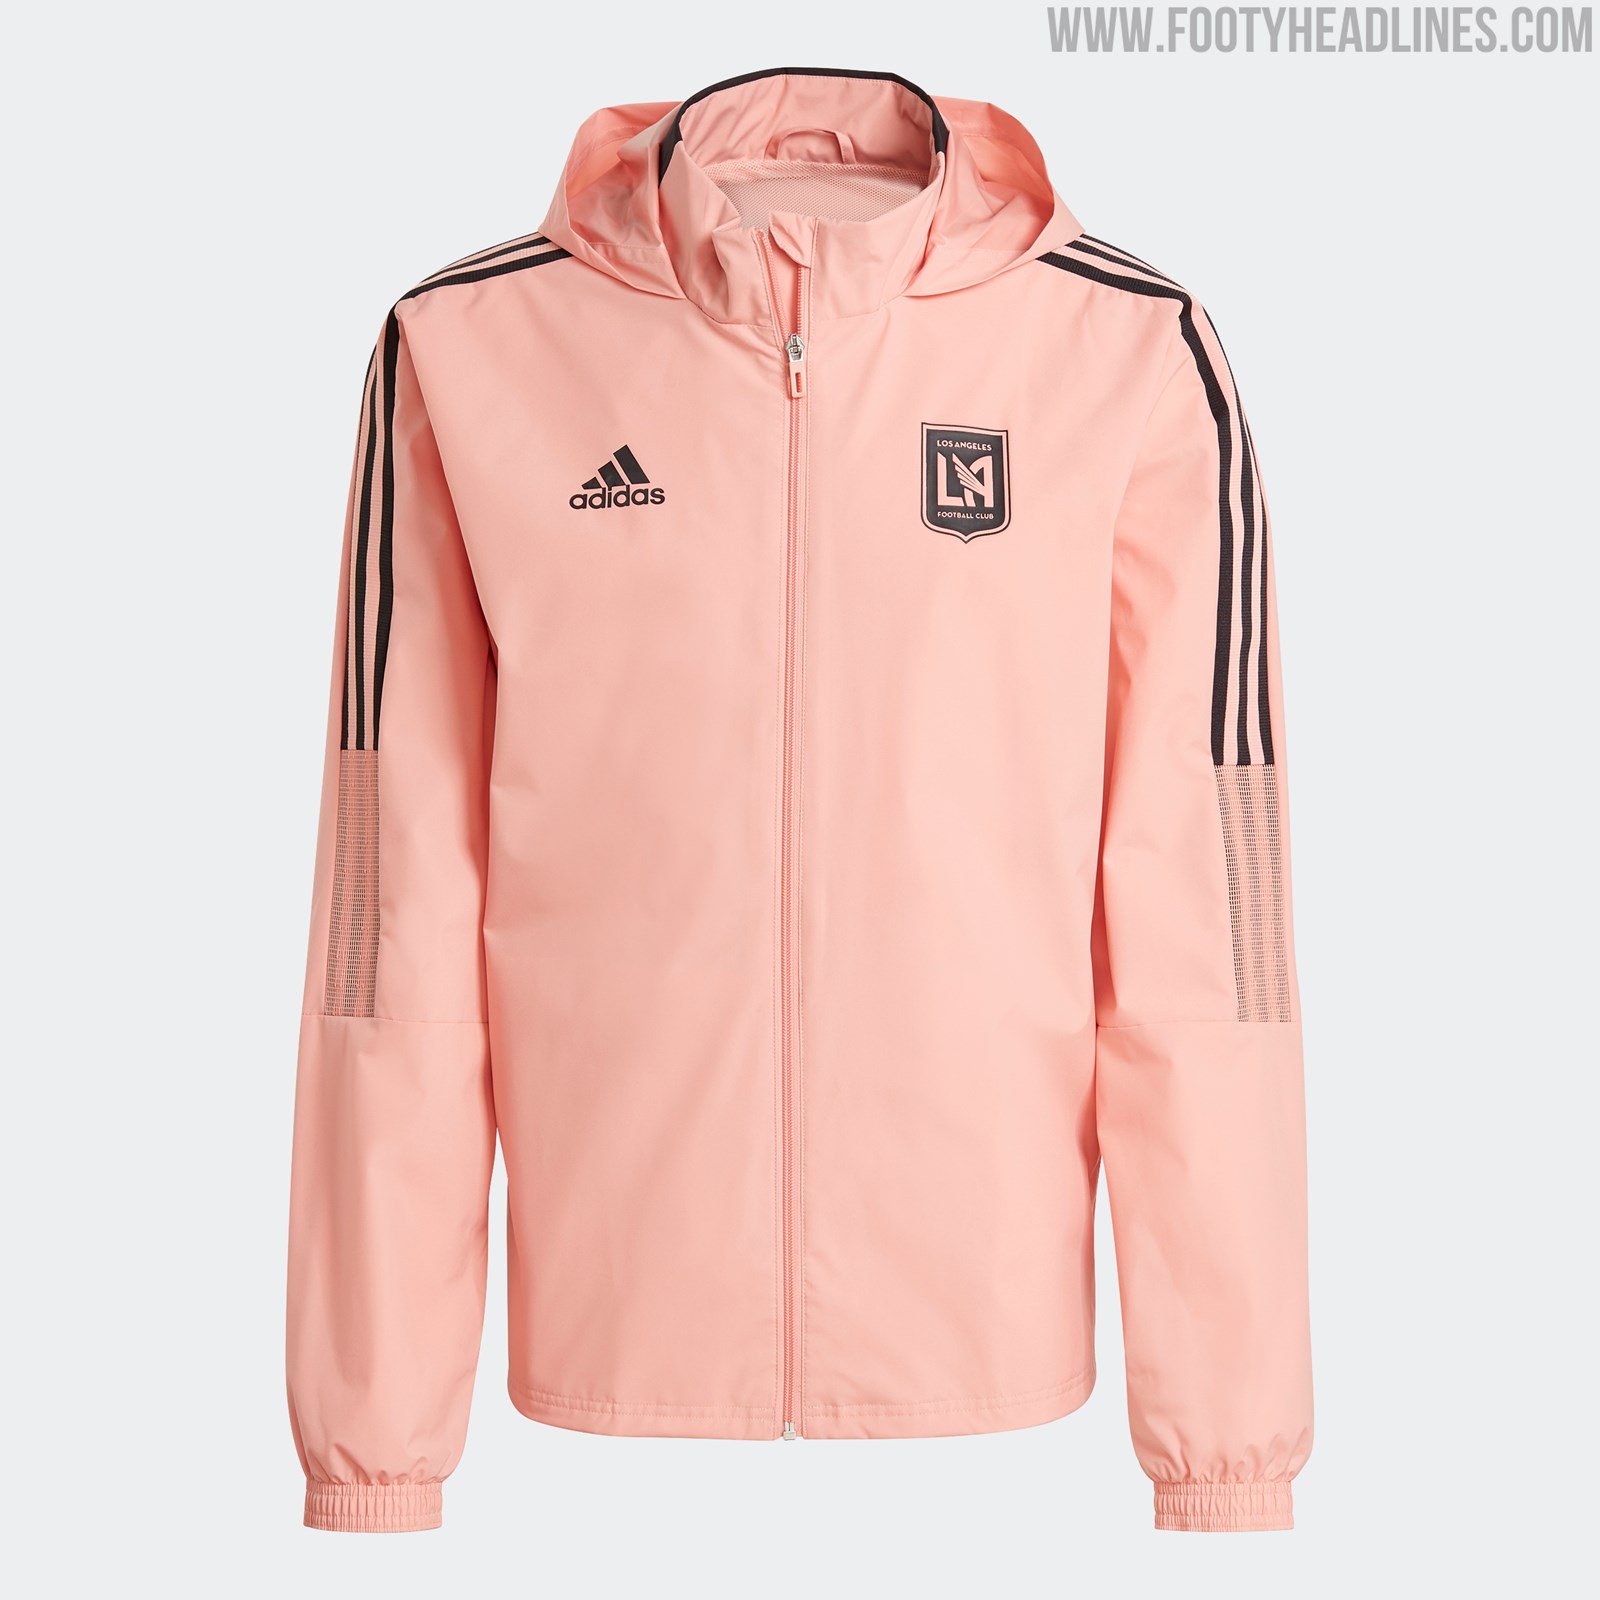 LAFC adidas 2021 Sleeveless Training Jersey - Pink